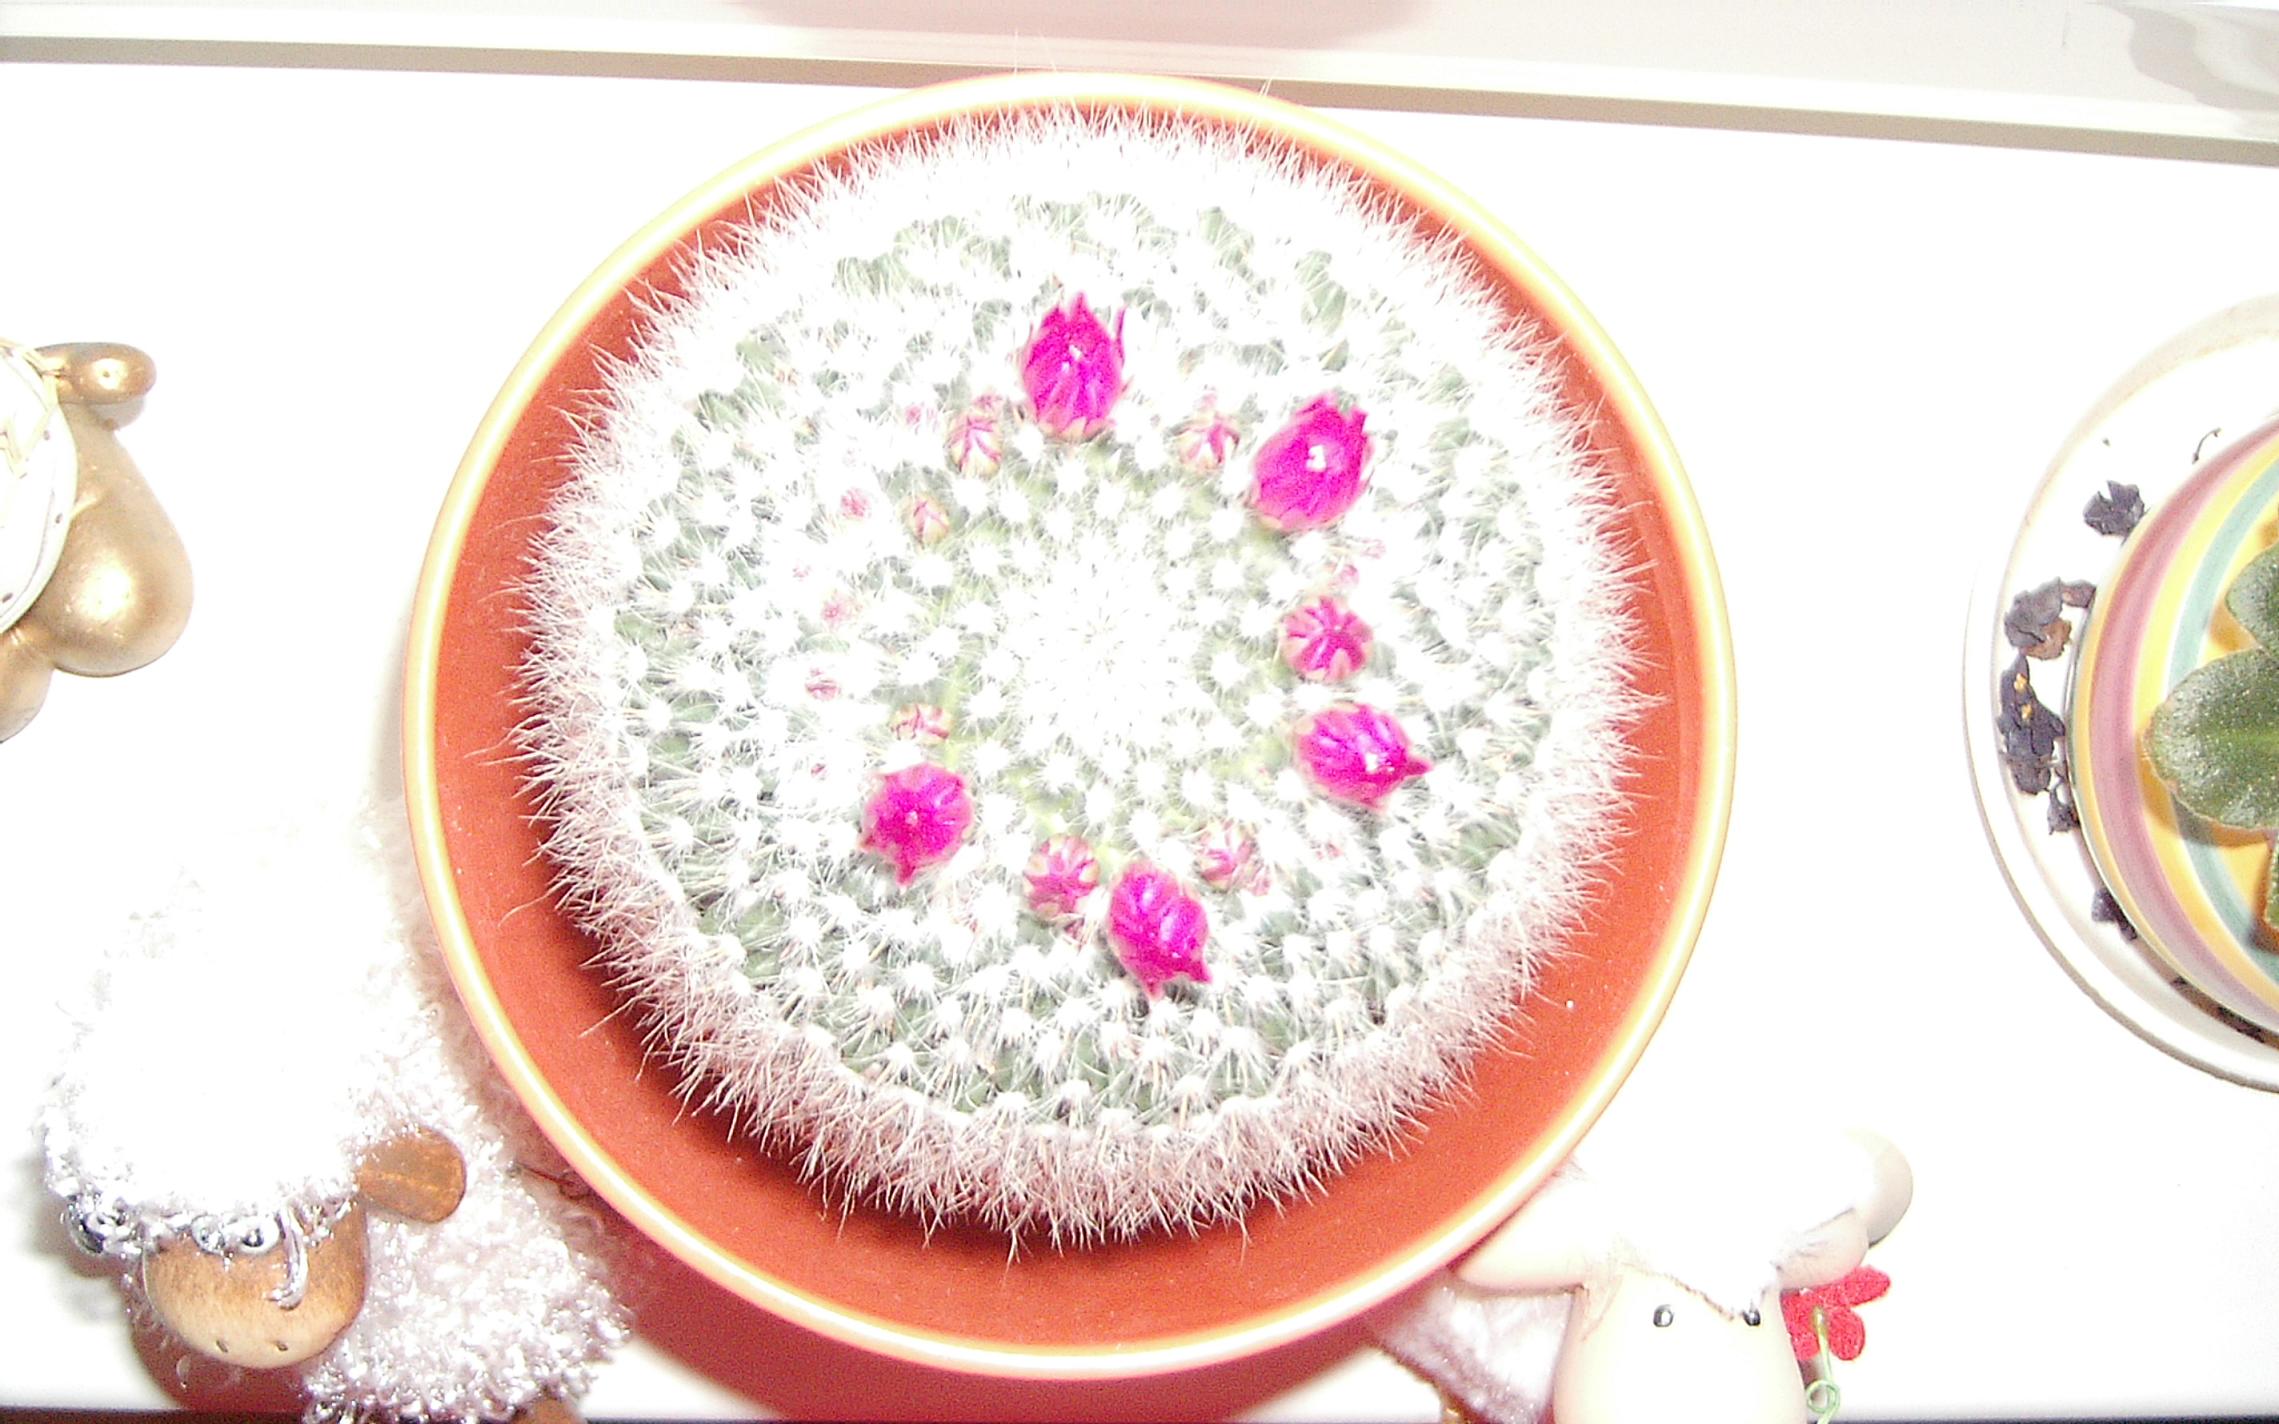 Takto nadherne mi kvitne kaktus :-)